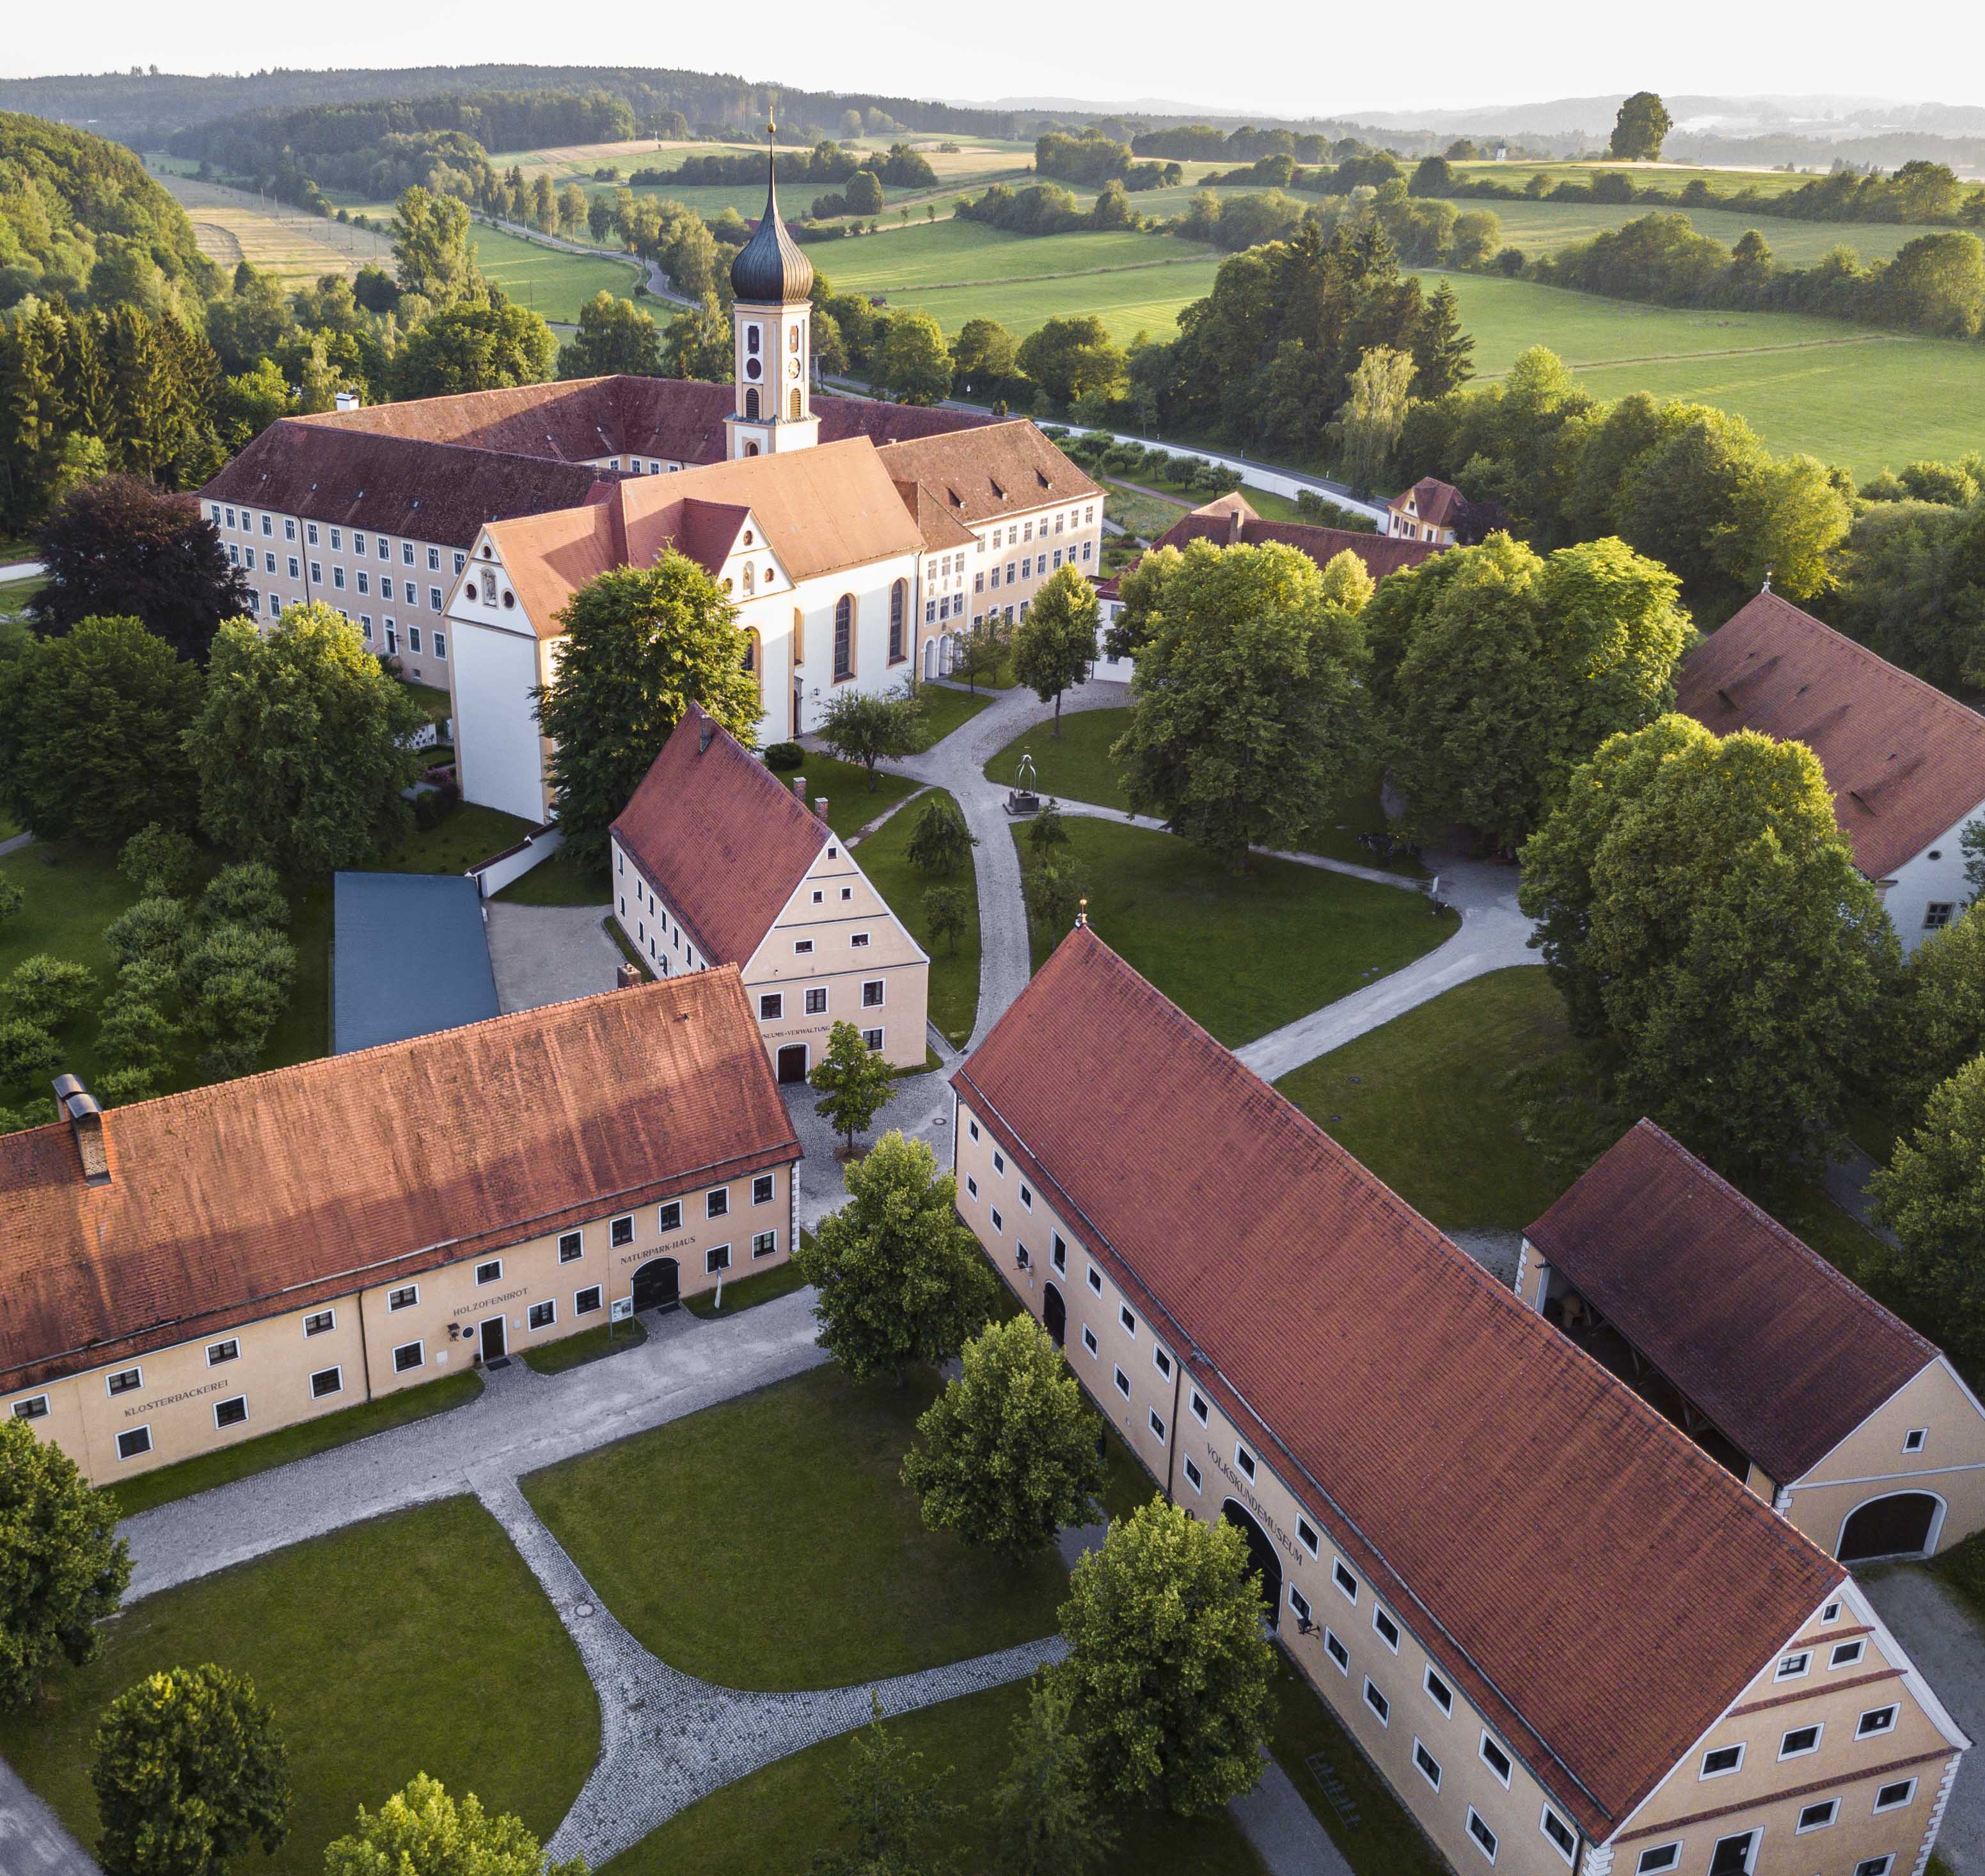 Oberschönenfeld mal anders erkunden: Das Kloster und seine Kulturlandschaft